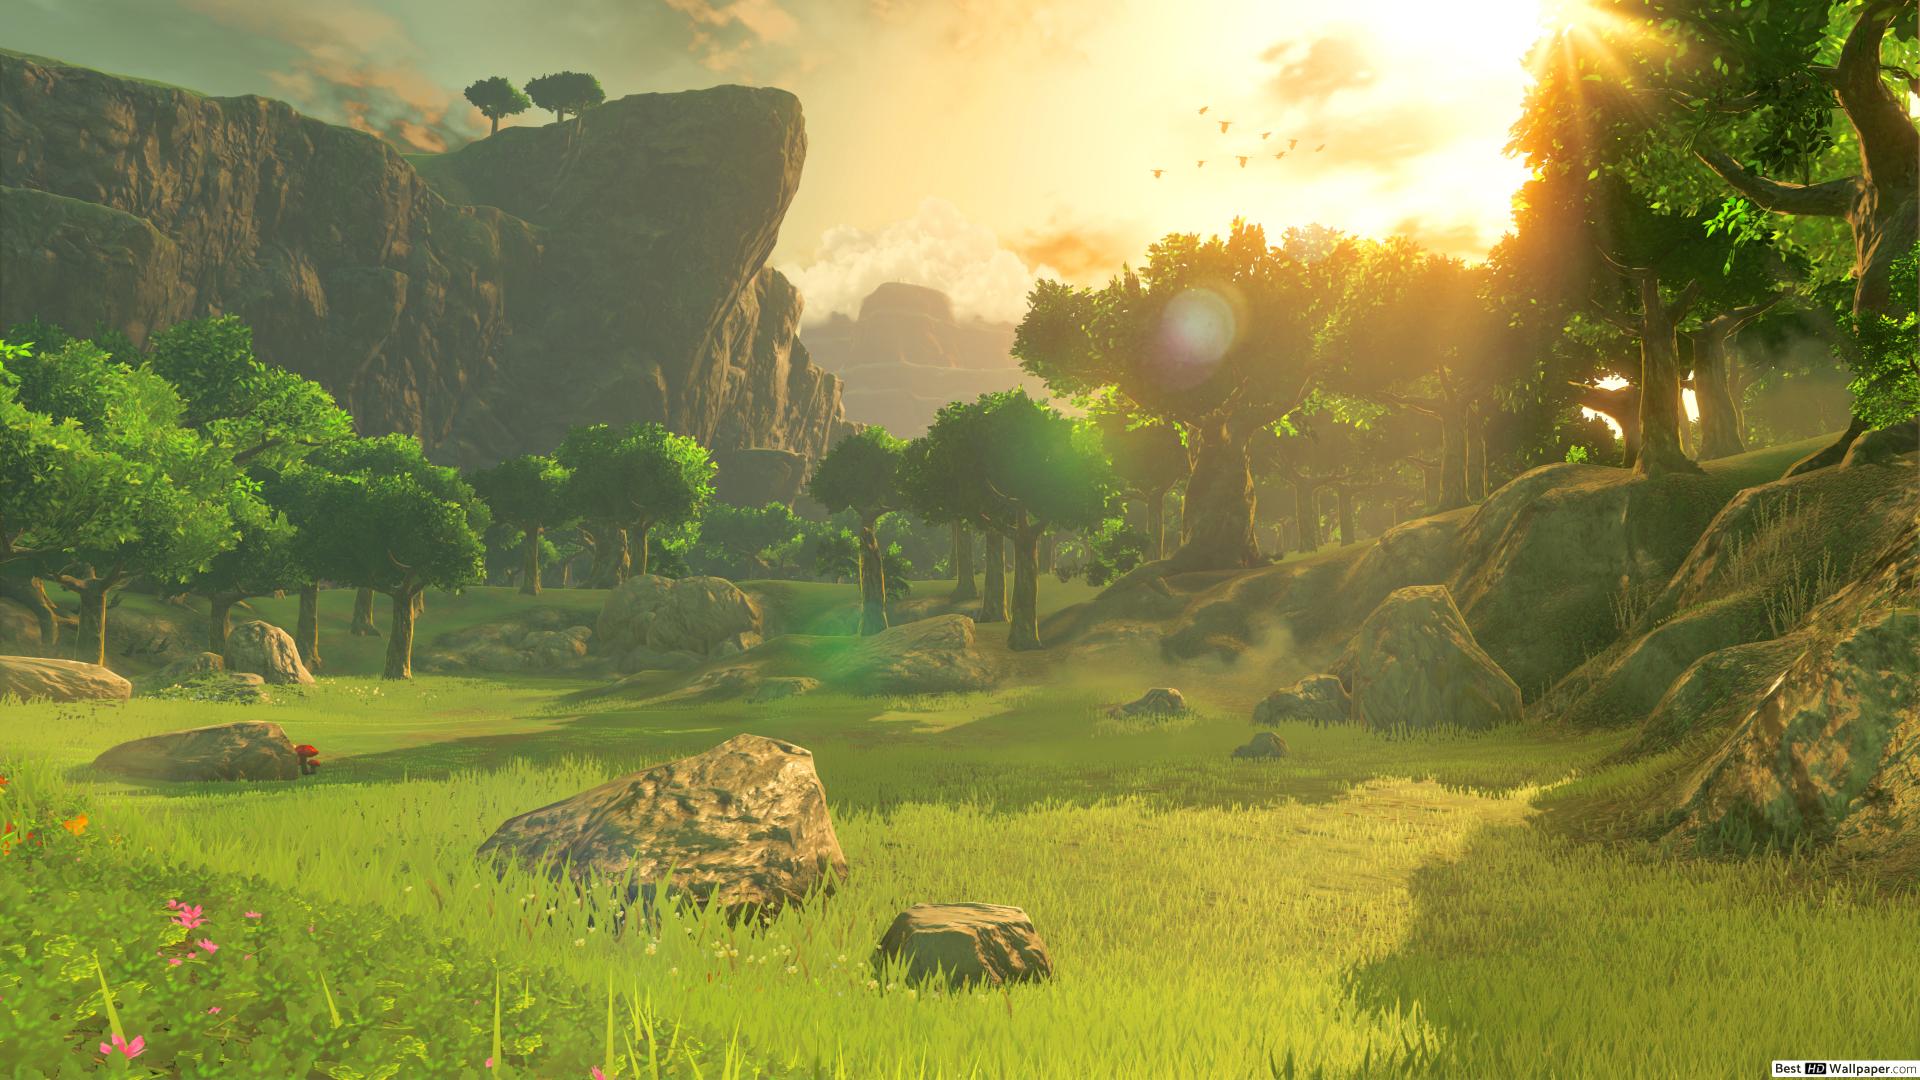 The Legend of Zelda: Breath of The Wild